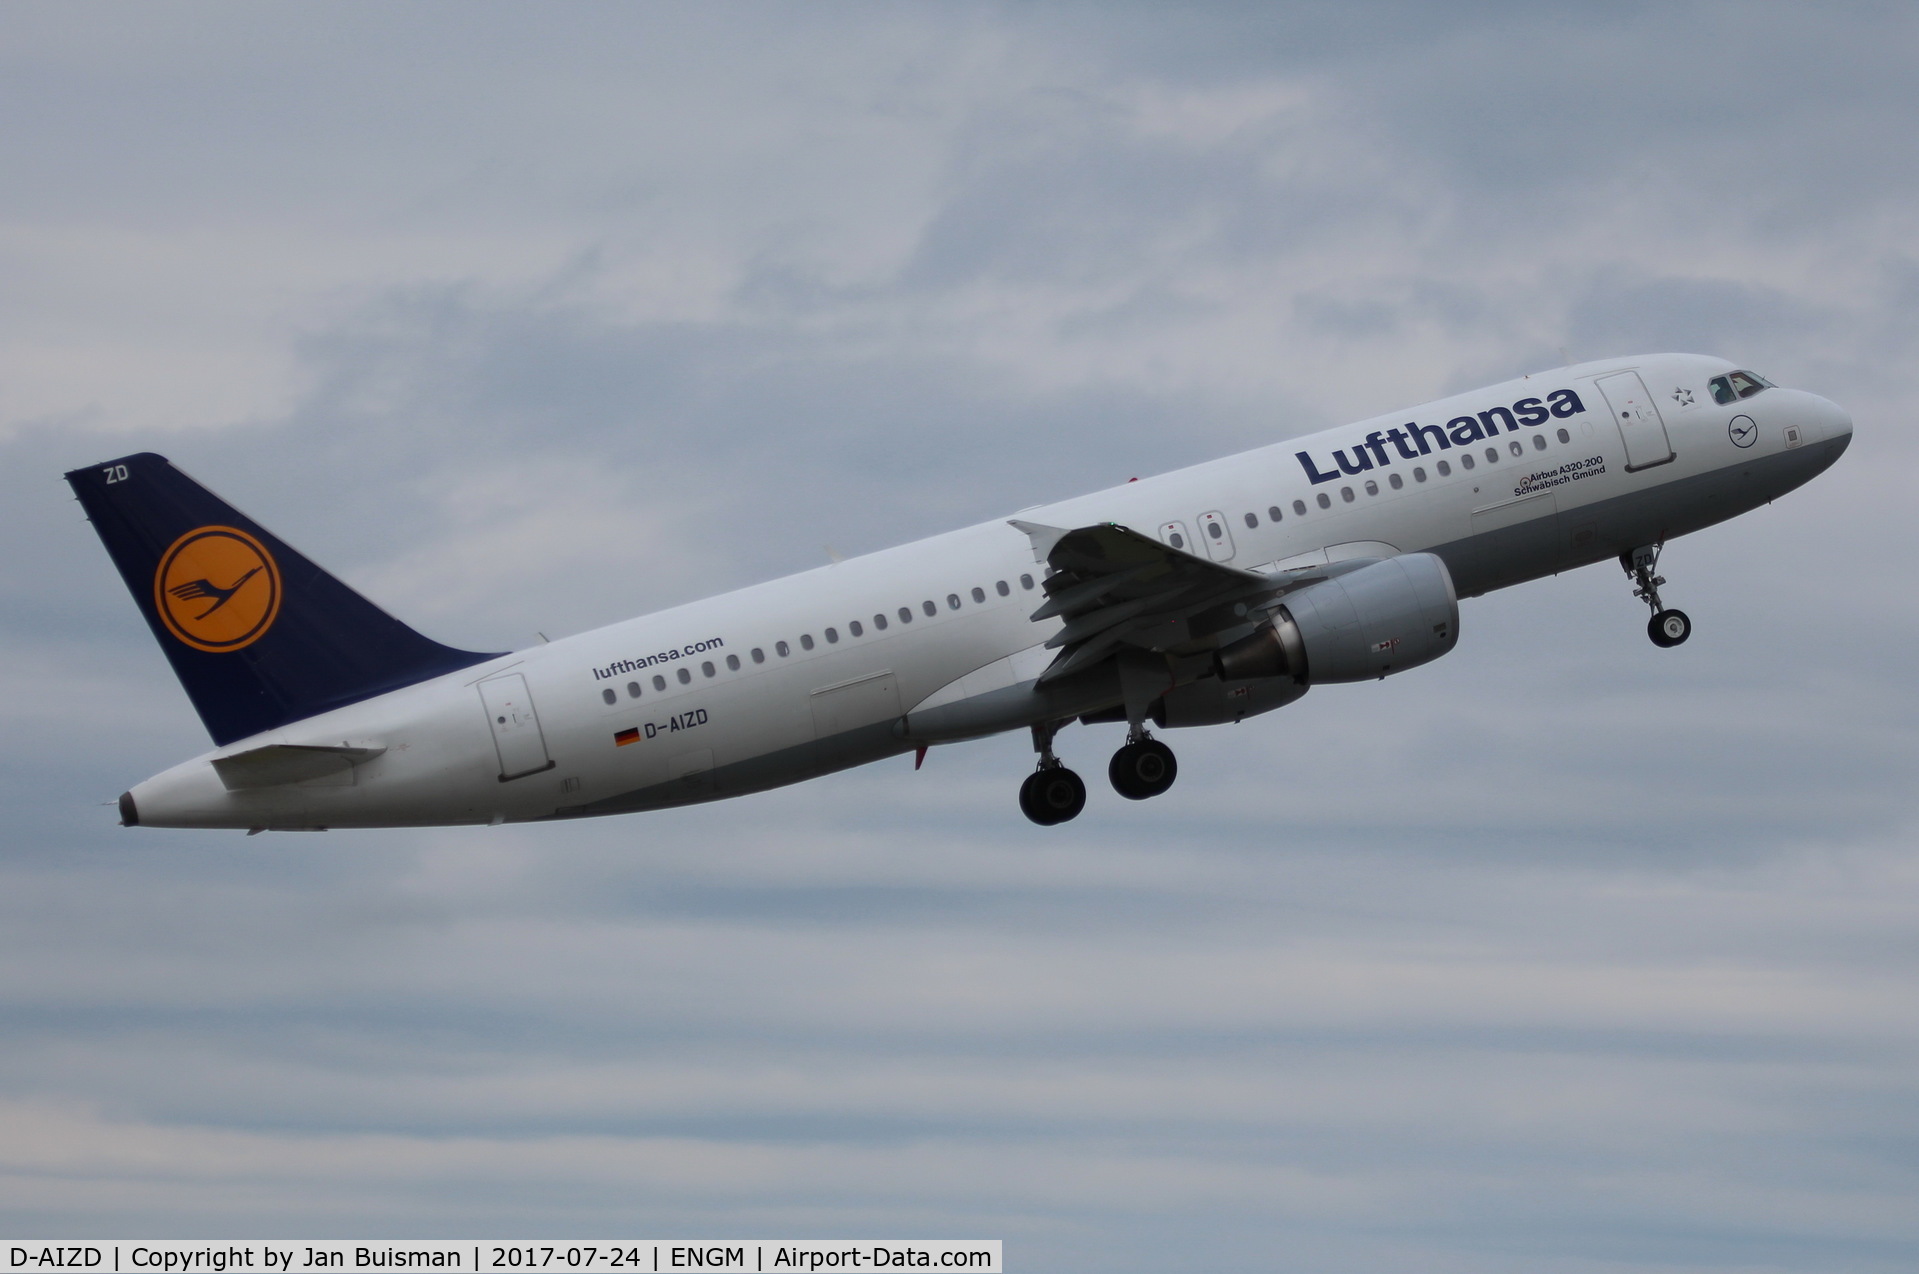 D-AIZD, 2010 Airbus A320-214 C/N 4191, Lufthansa